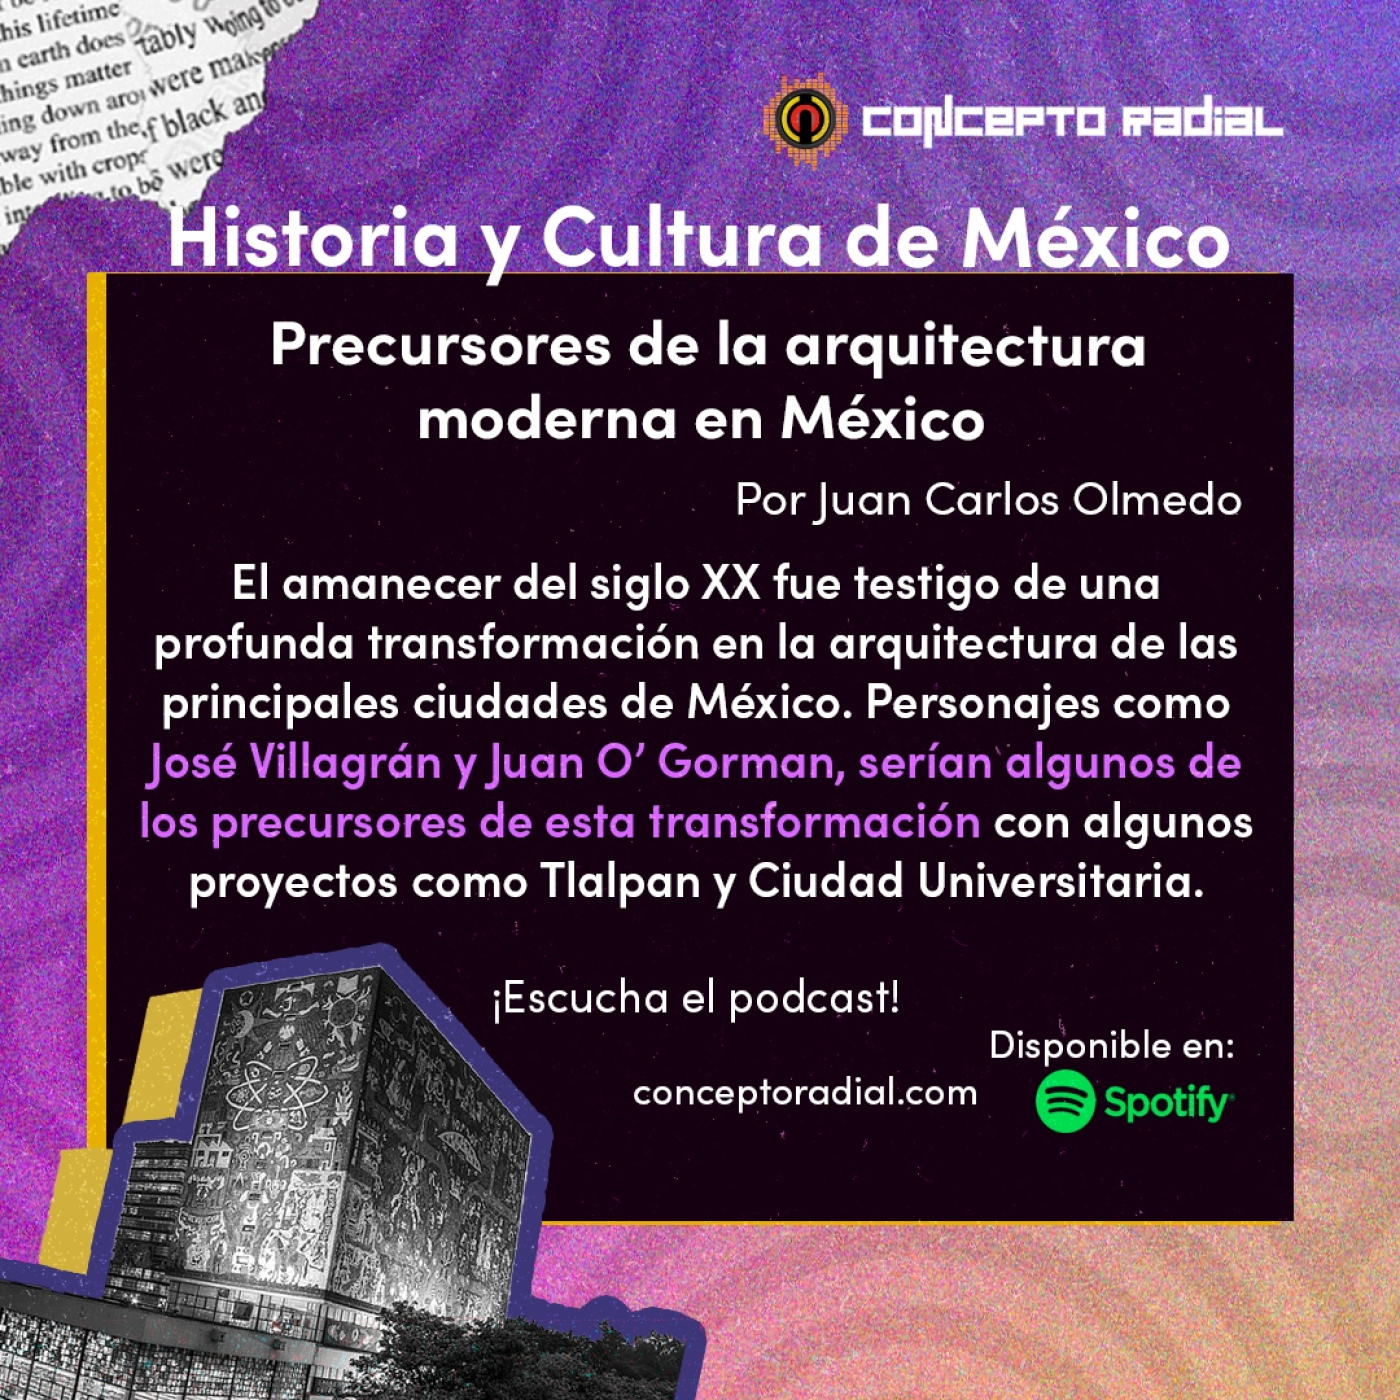 Precursores de la arquitectura moderna en México